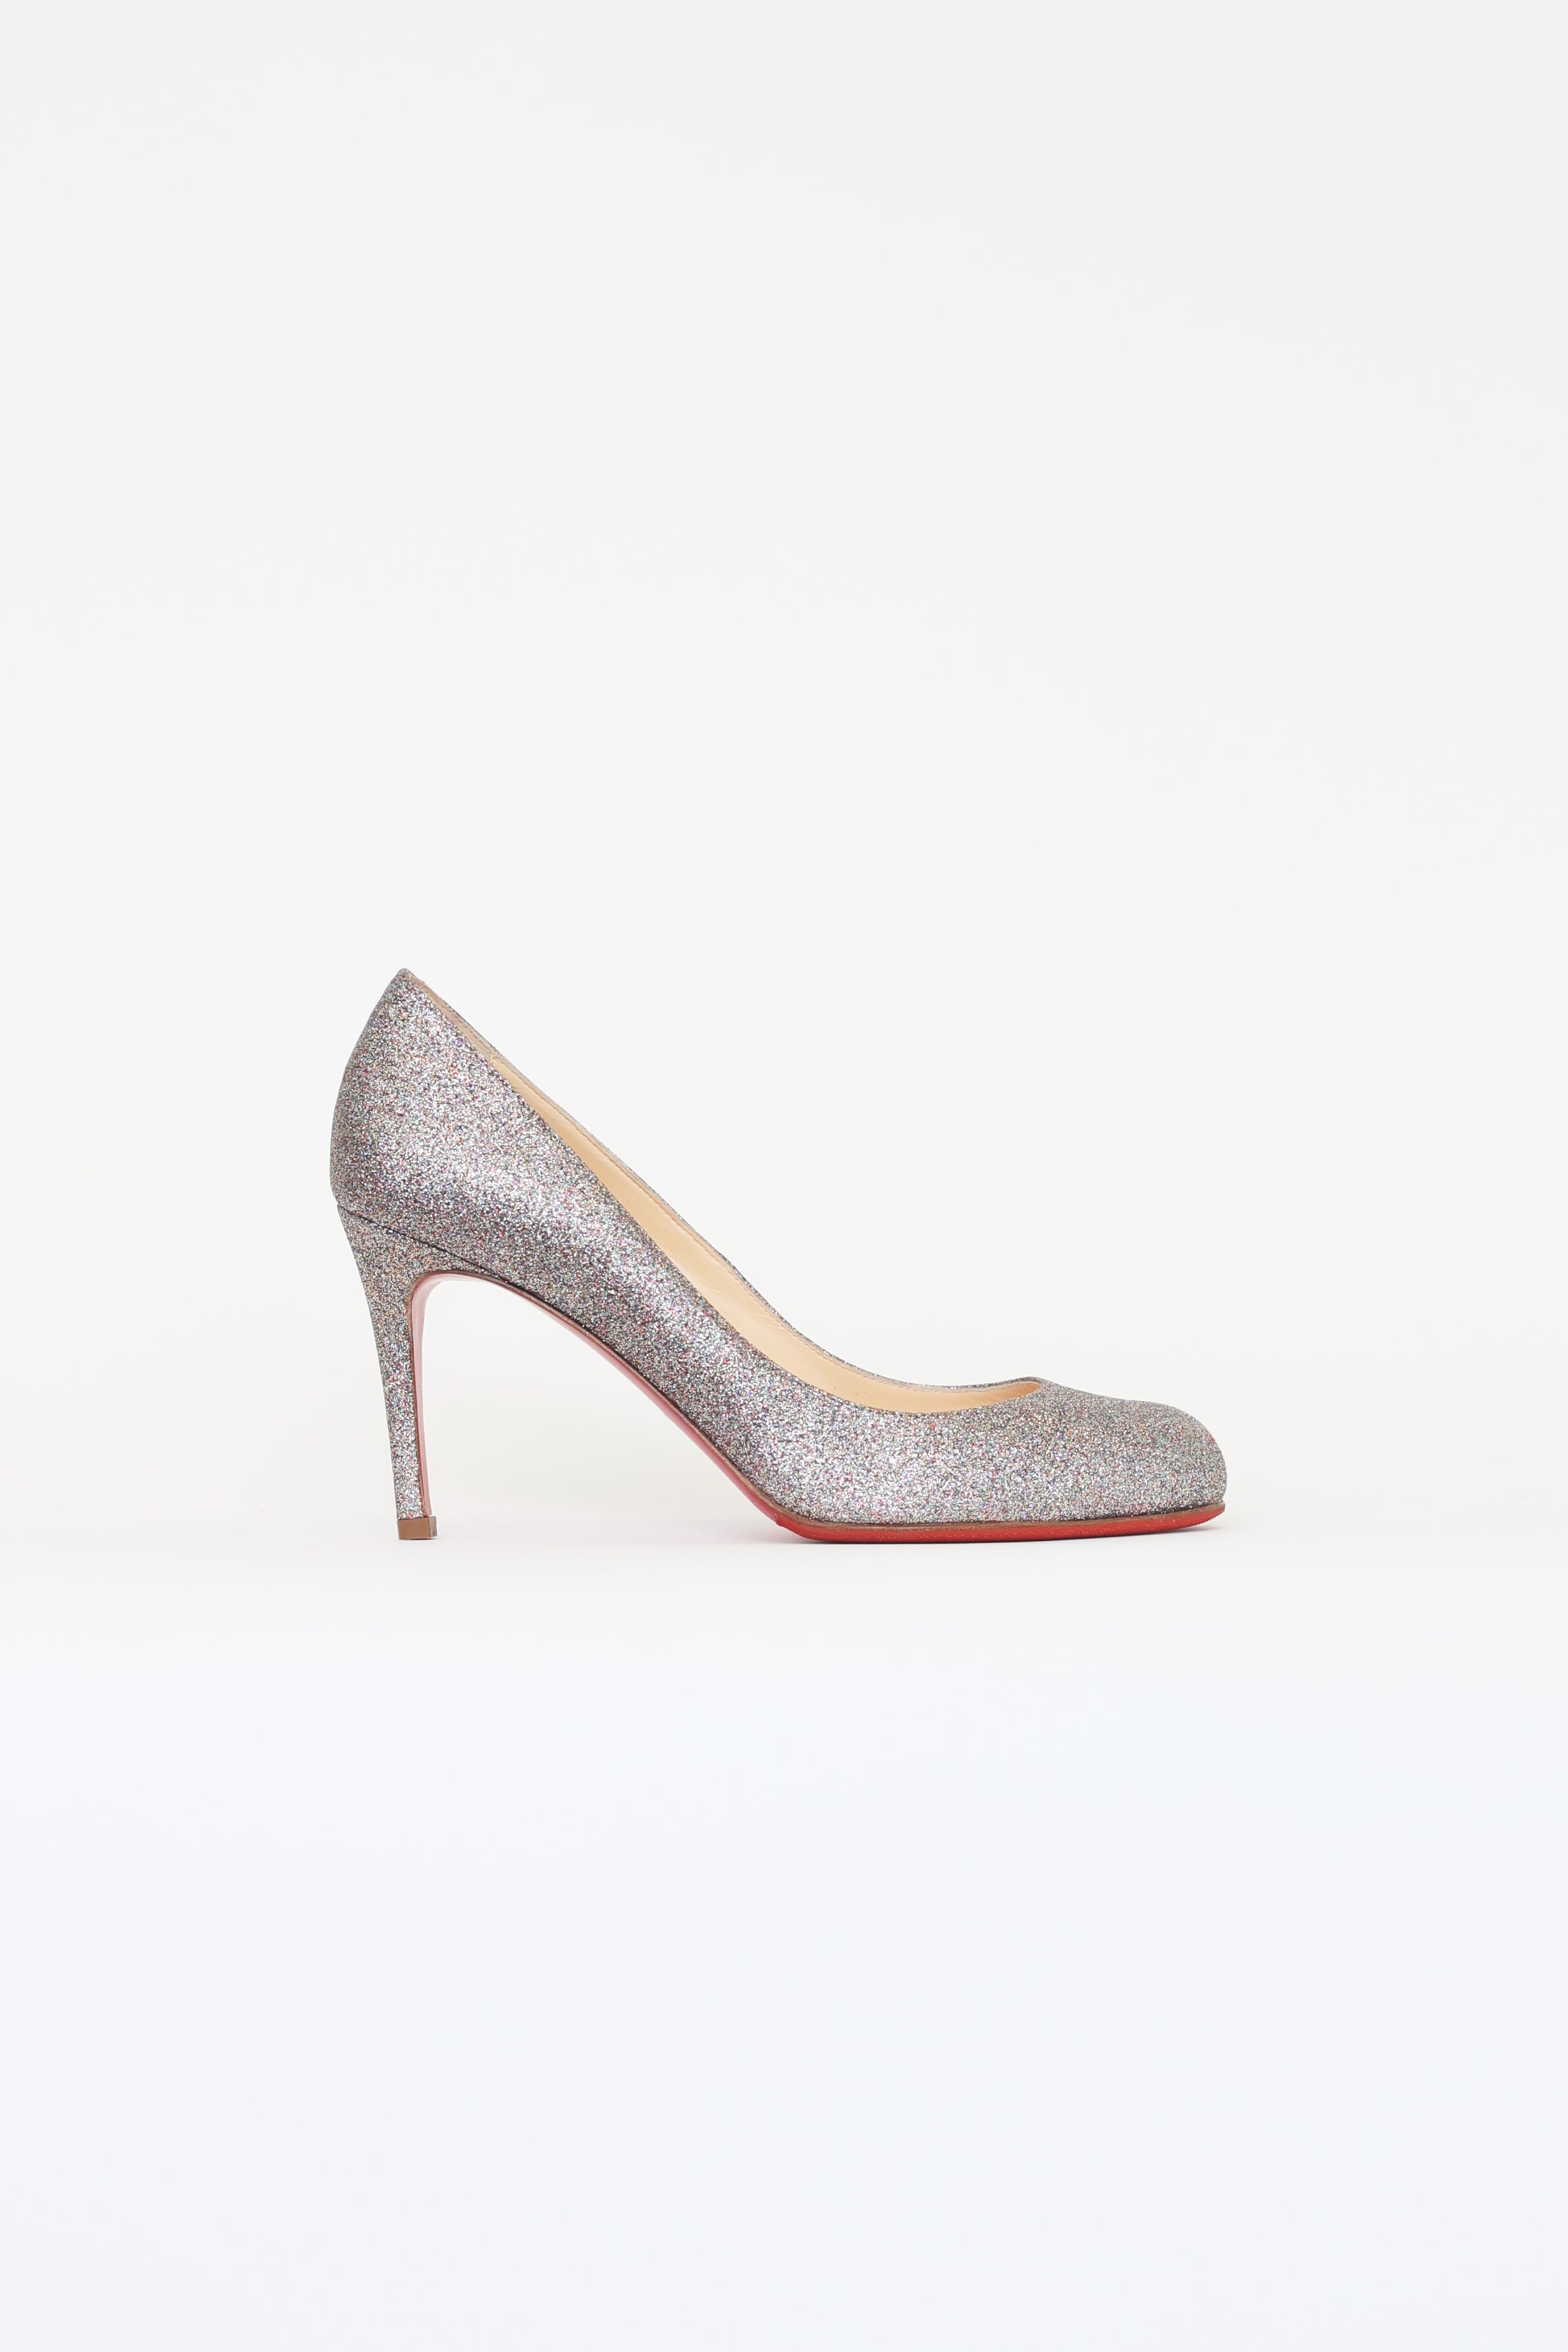 Amazon.com | Qonetic Women's Classic Stilettos Open Toe Ankle Strap Wedding  Pump High Heel Sandals | Shoes